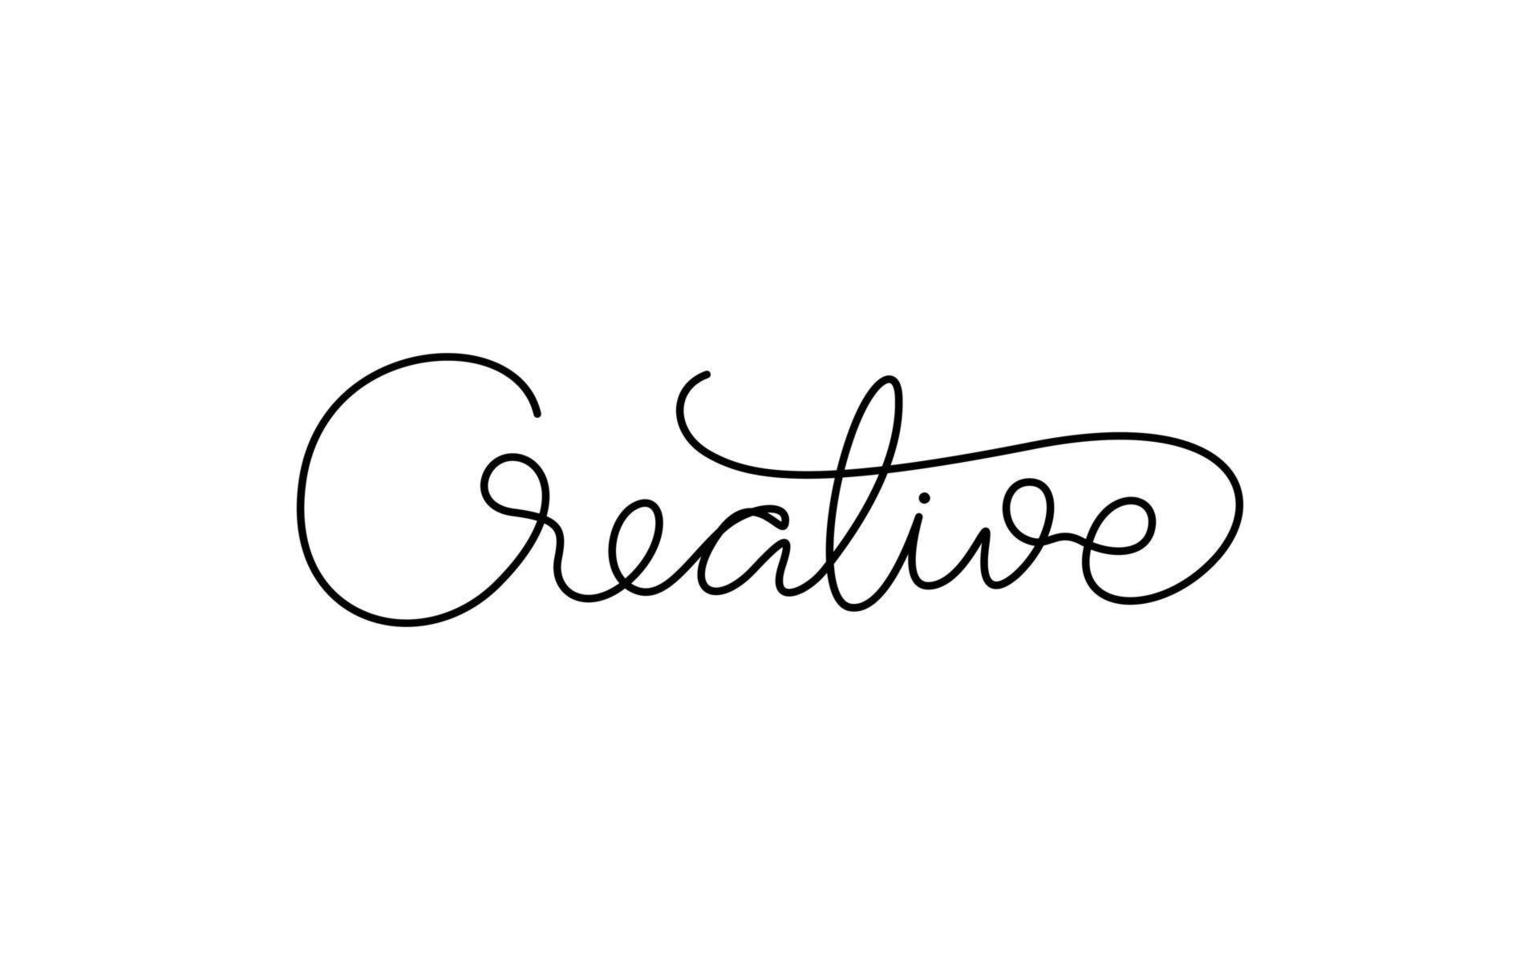 kreatives wortschriftdesign in durchgehender linienzeichnung vektor